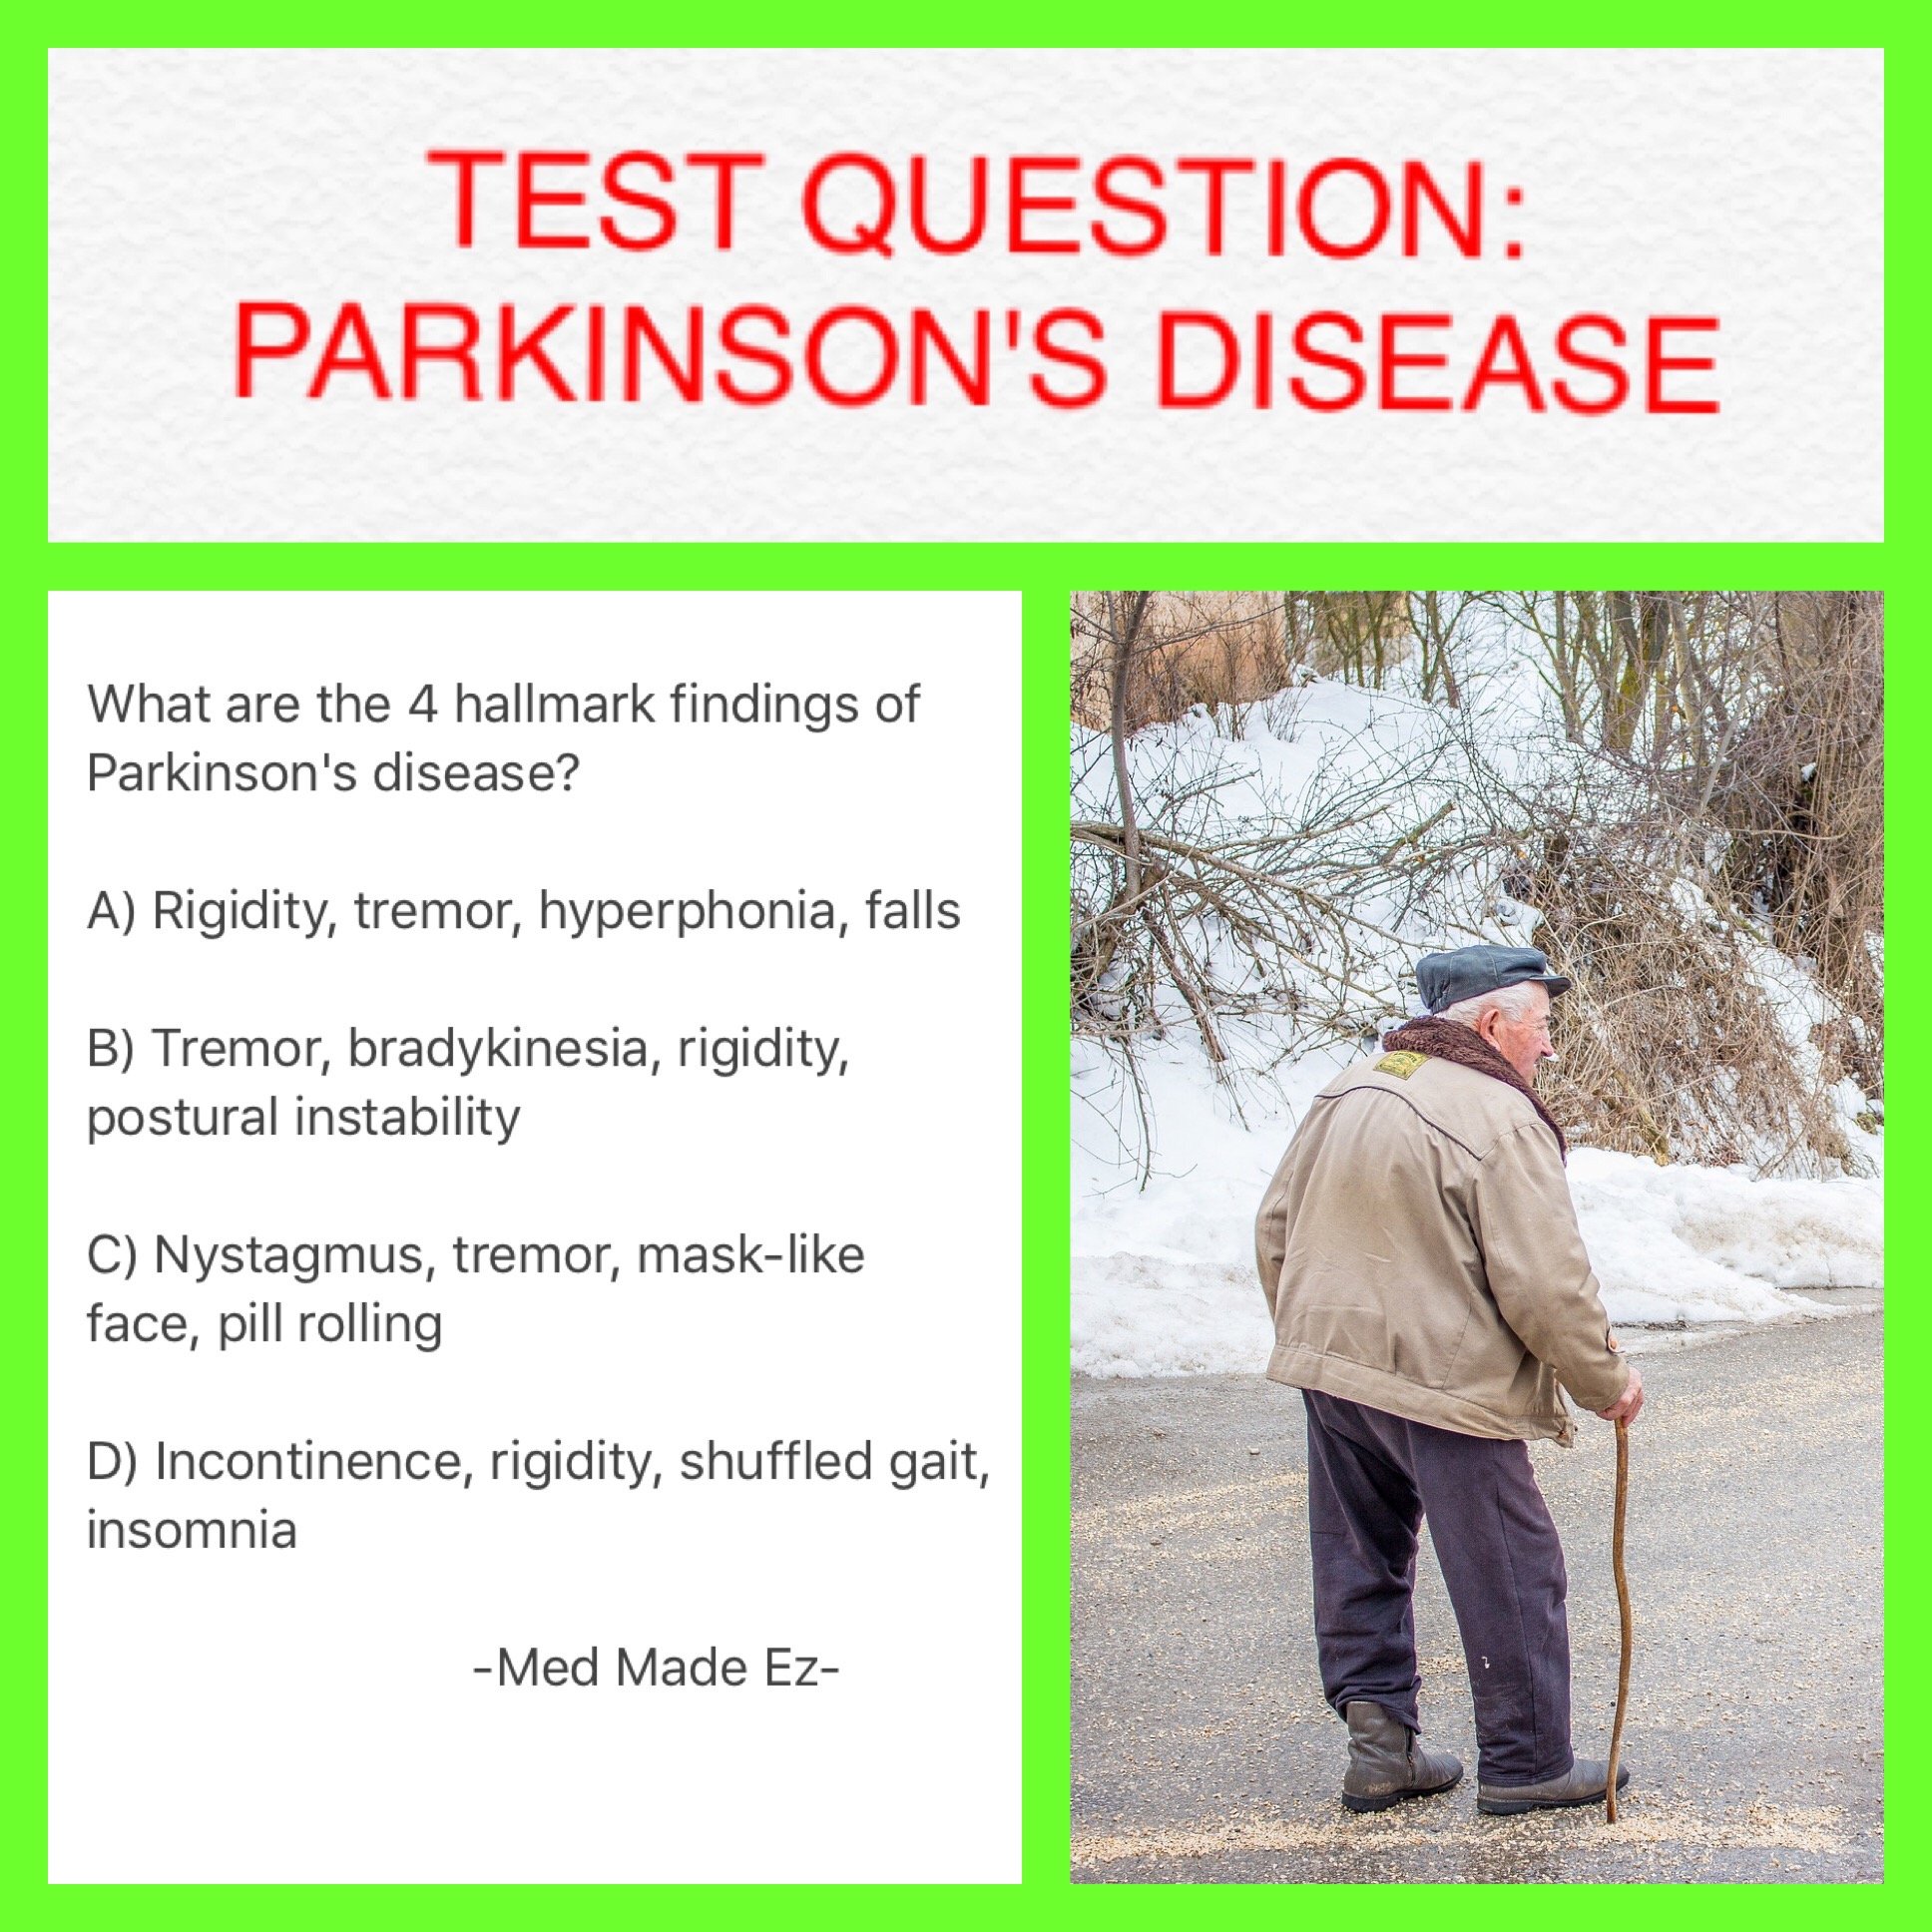 TEST QUESTION: Parkinson